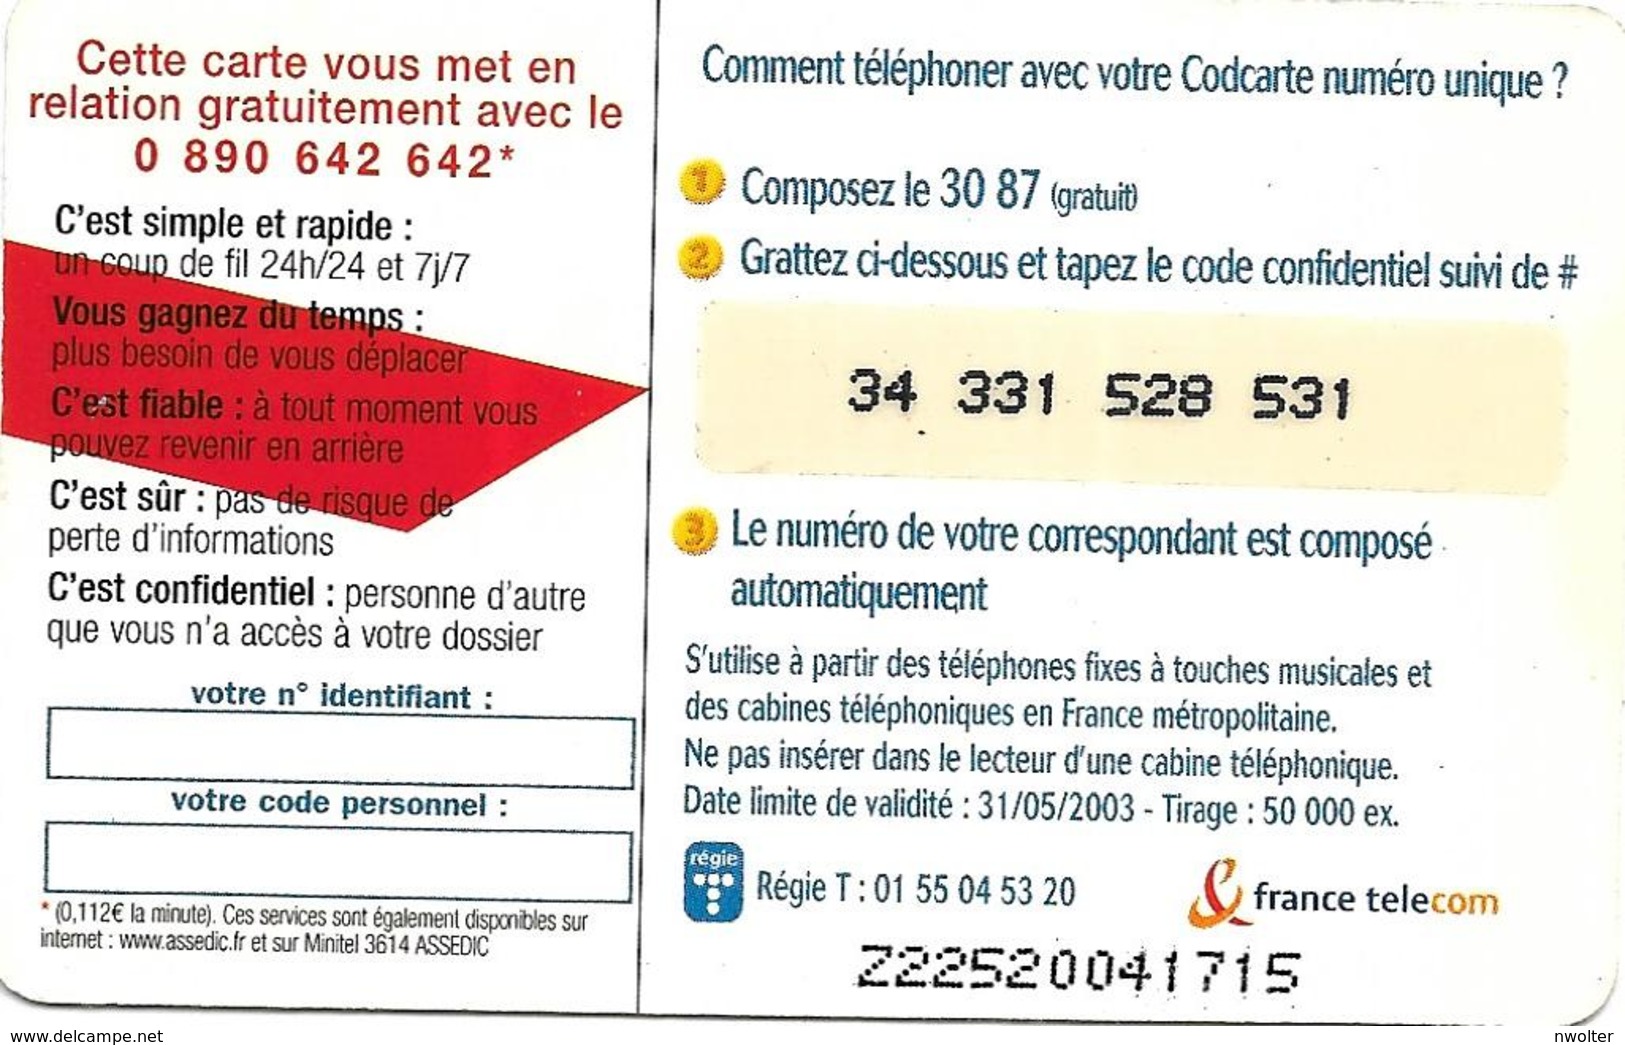 @+ Codcarte France Télécom - Unidialog Paris - 10min - Z22520041715 - Billetes FT